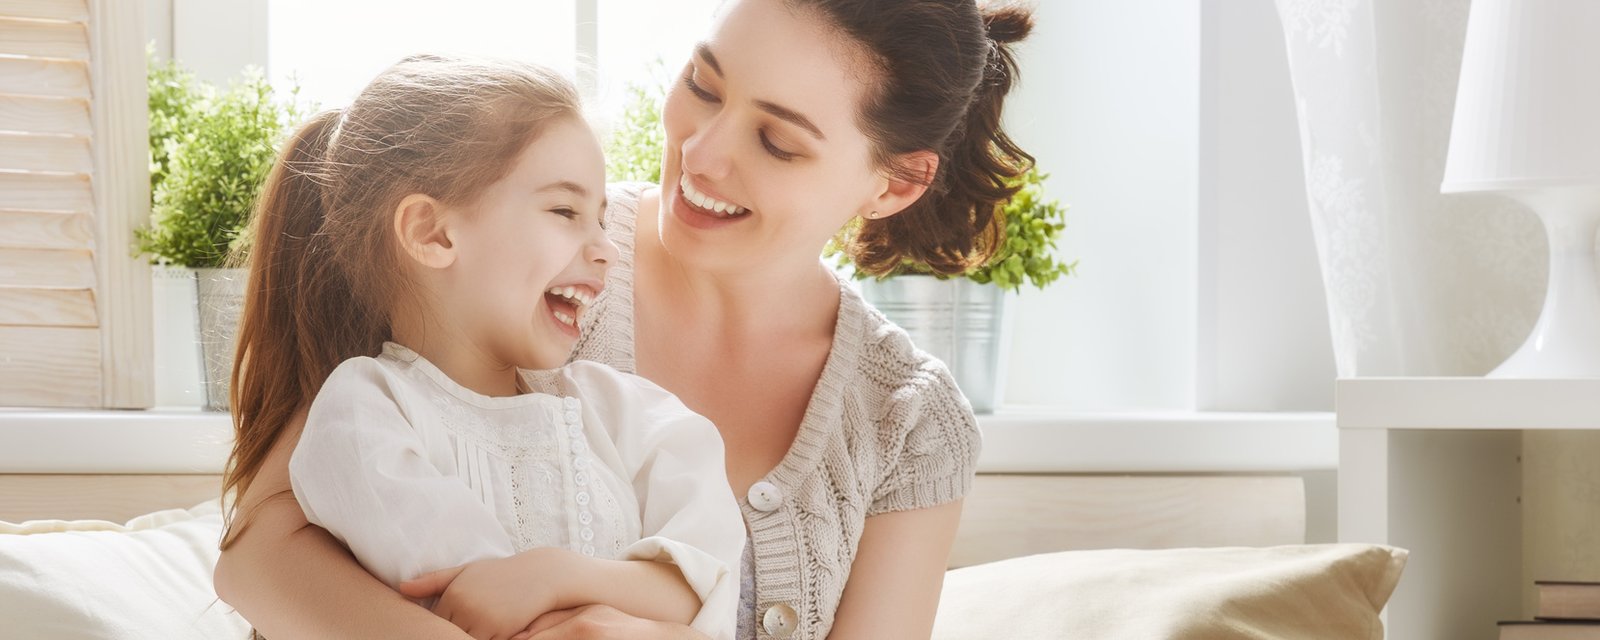 20 trucs simples pour calmer votre enfant sans hausser le ton